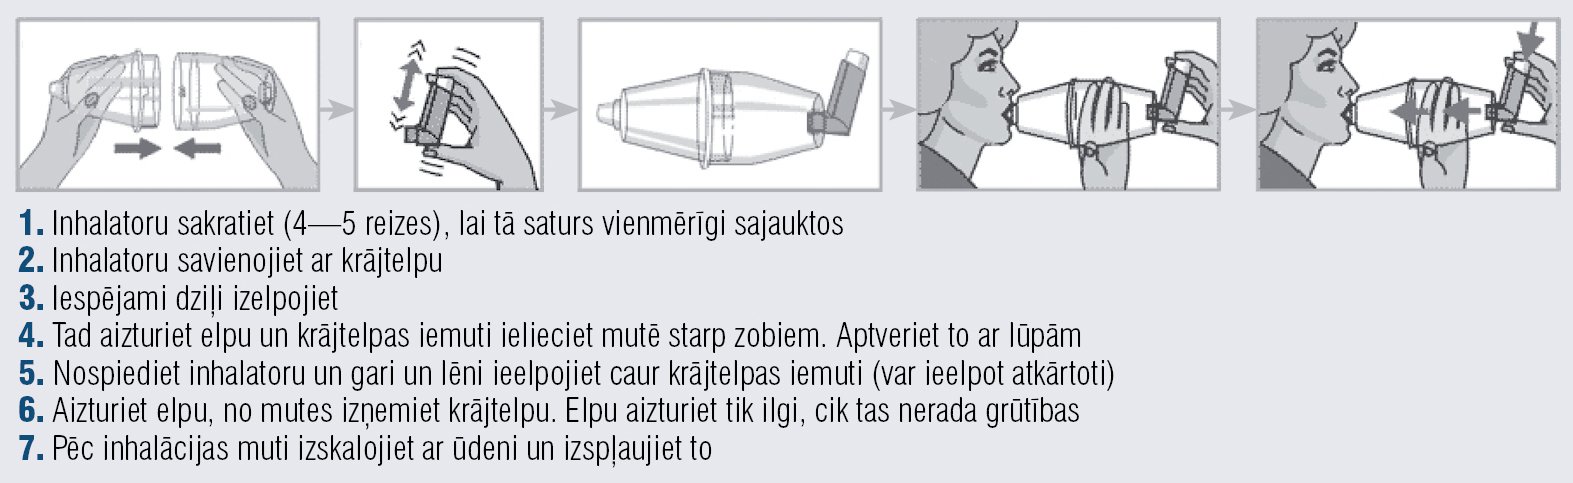 Dozēto aerosola inhalatoru lietošanas metode ar krājtelpu